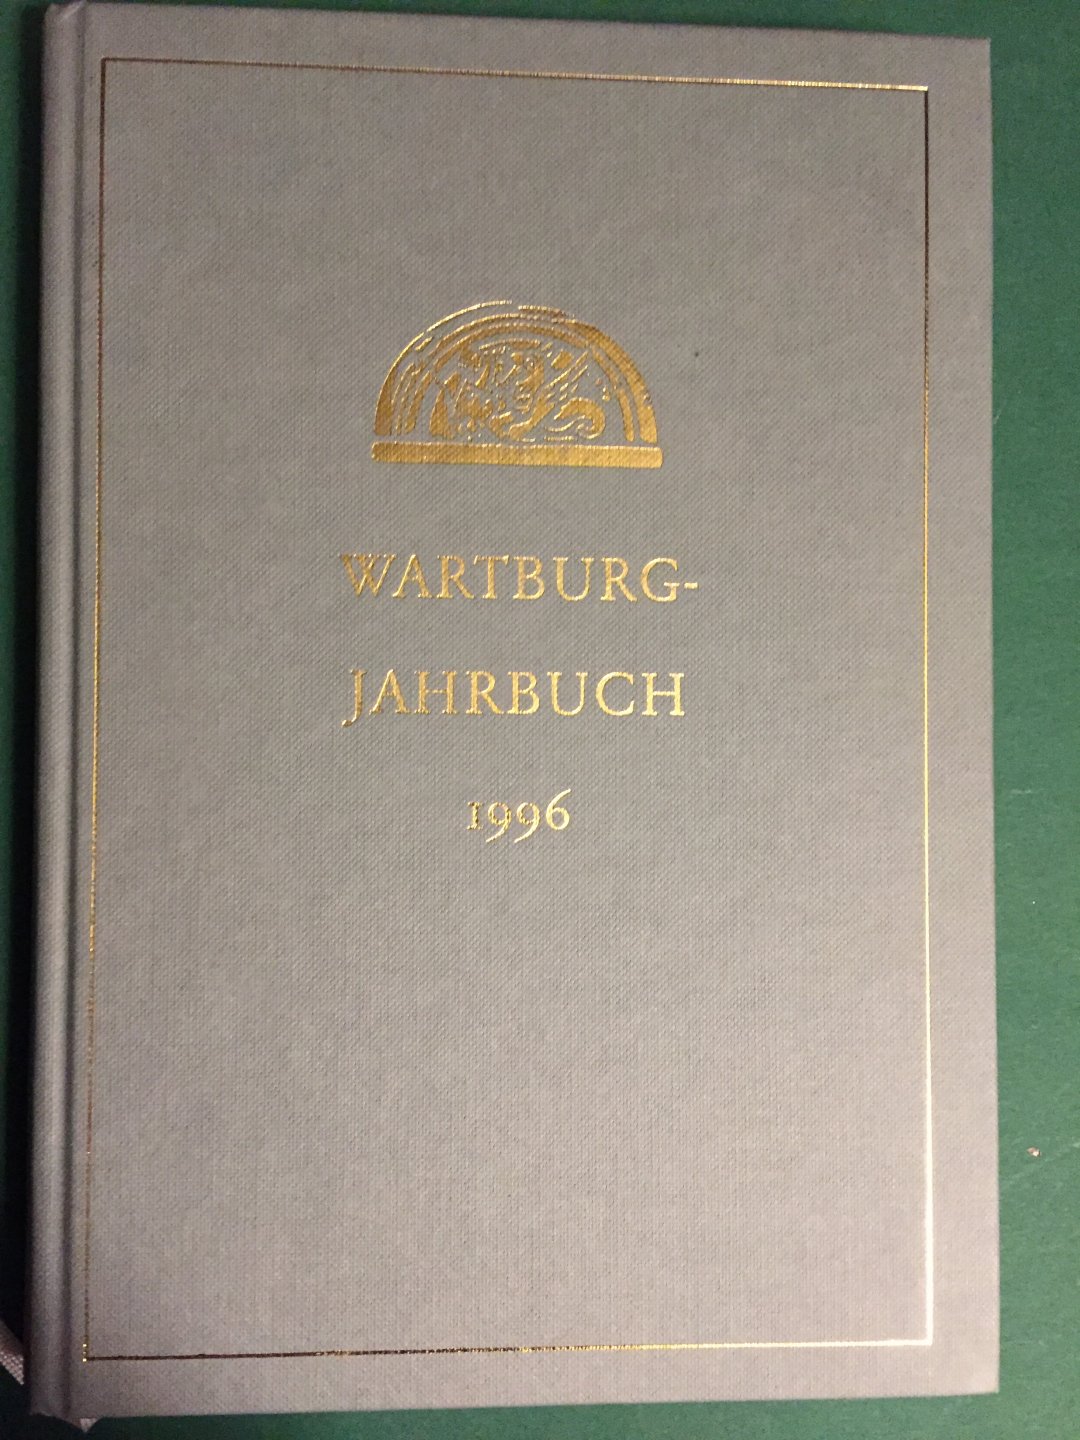  - Wartburg-Jahrbuch Sonderband 1996 - Wissenschaftliches Kolloquium: Der Mensch Luther und sein Umfeld - Vom Mai 1996 auf der Wartburg